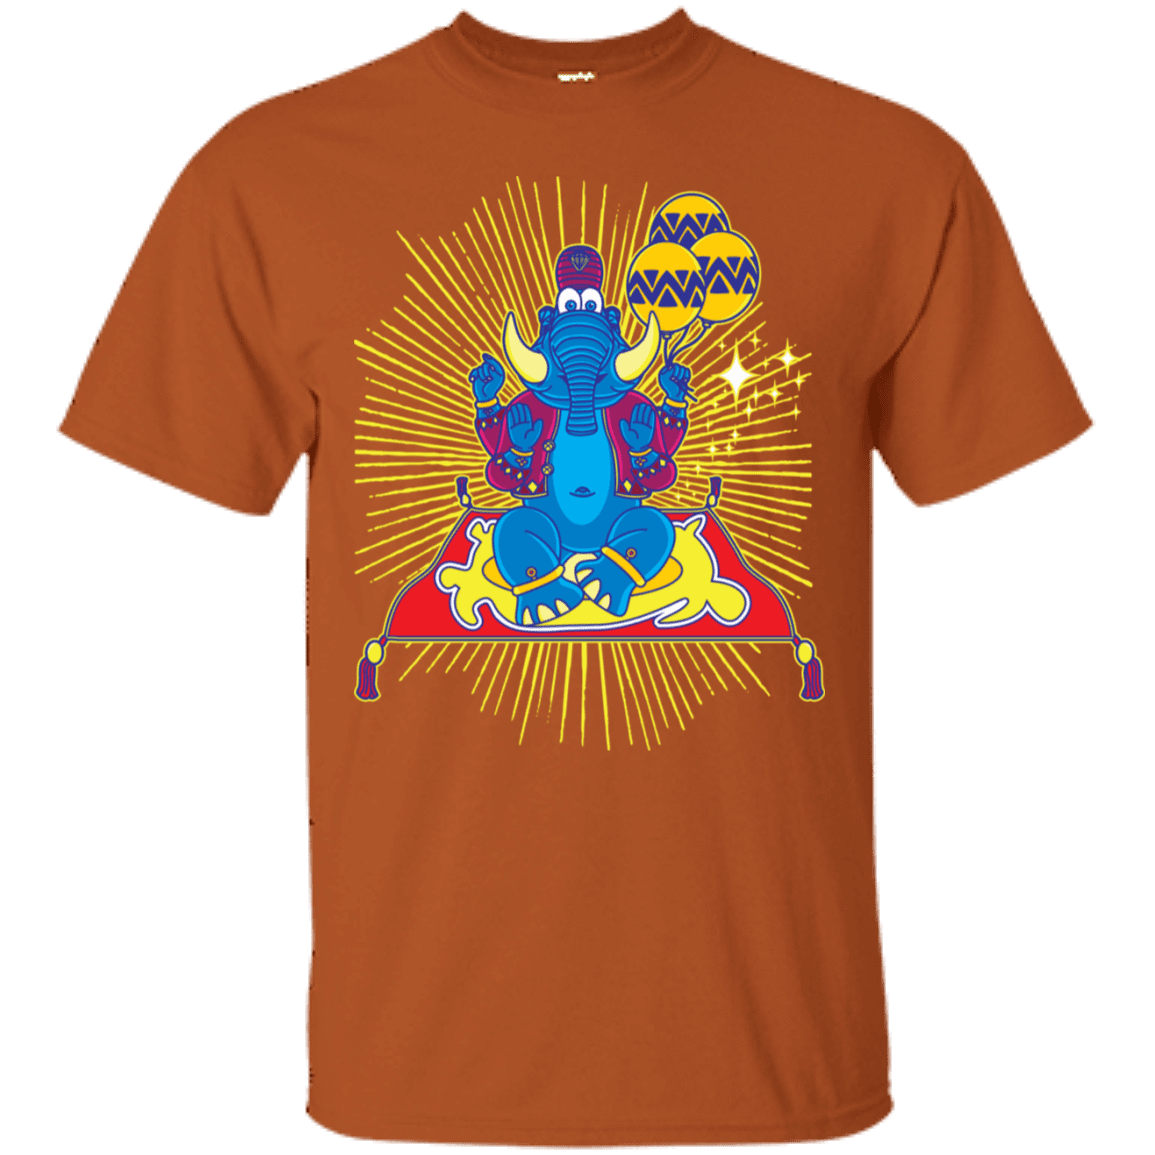 T-Shirts Texas Orange / S Elephant God T-Shirt